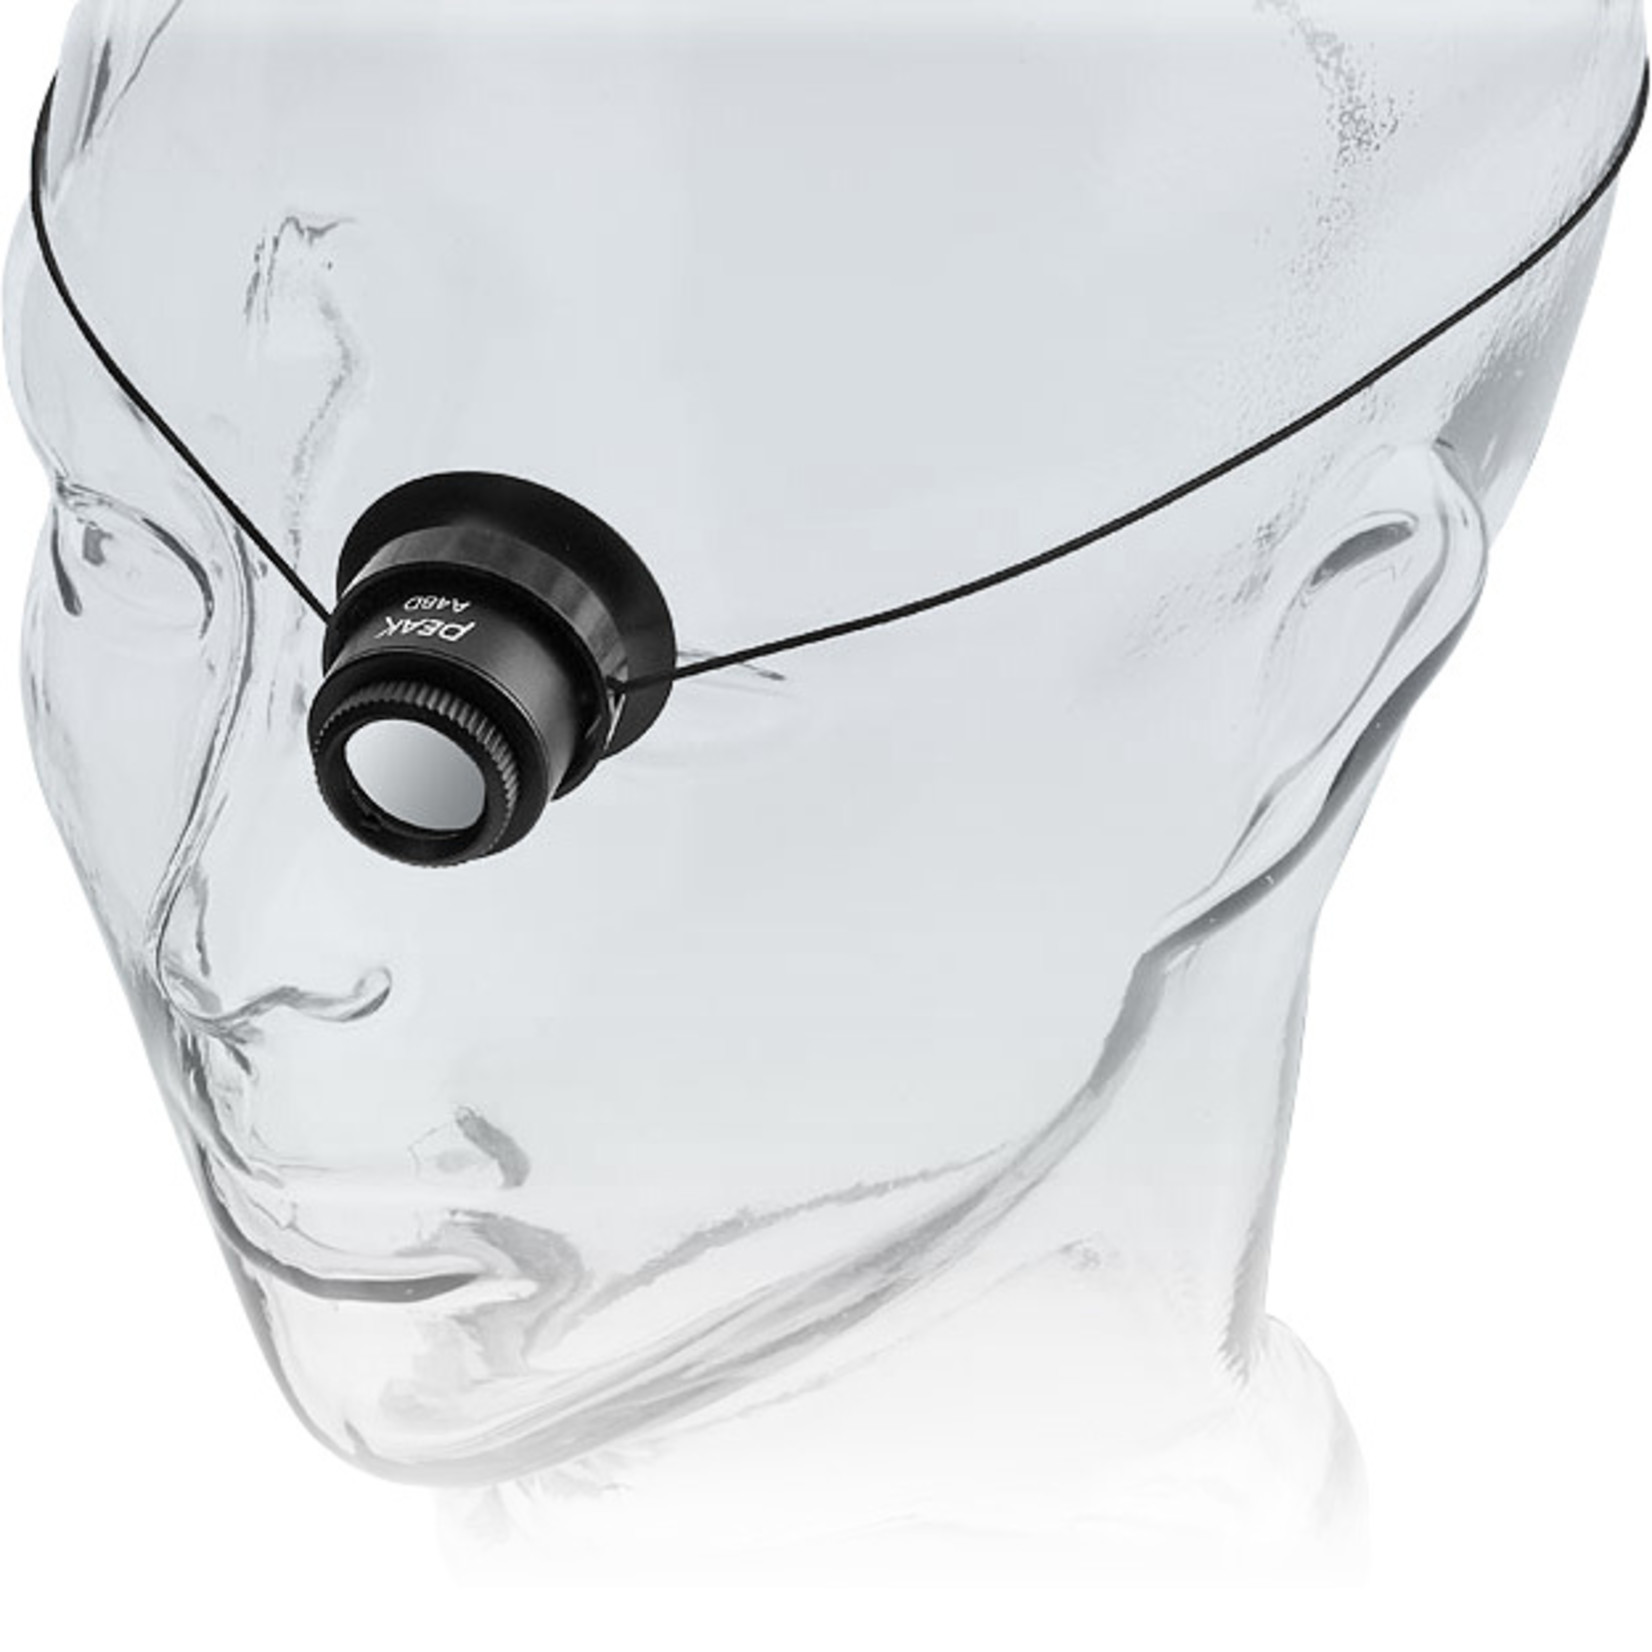 PEAK Watchmaker's magnifier 3.3x